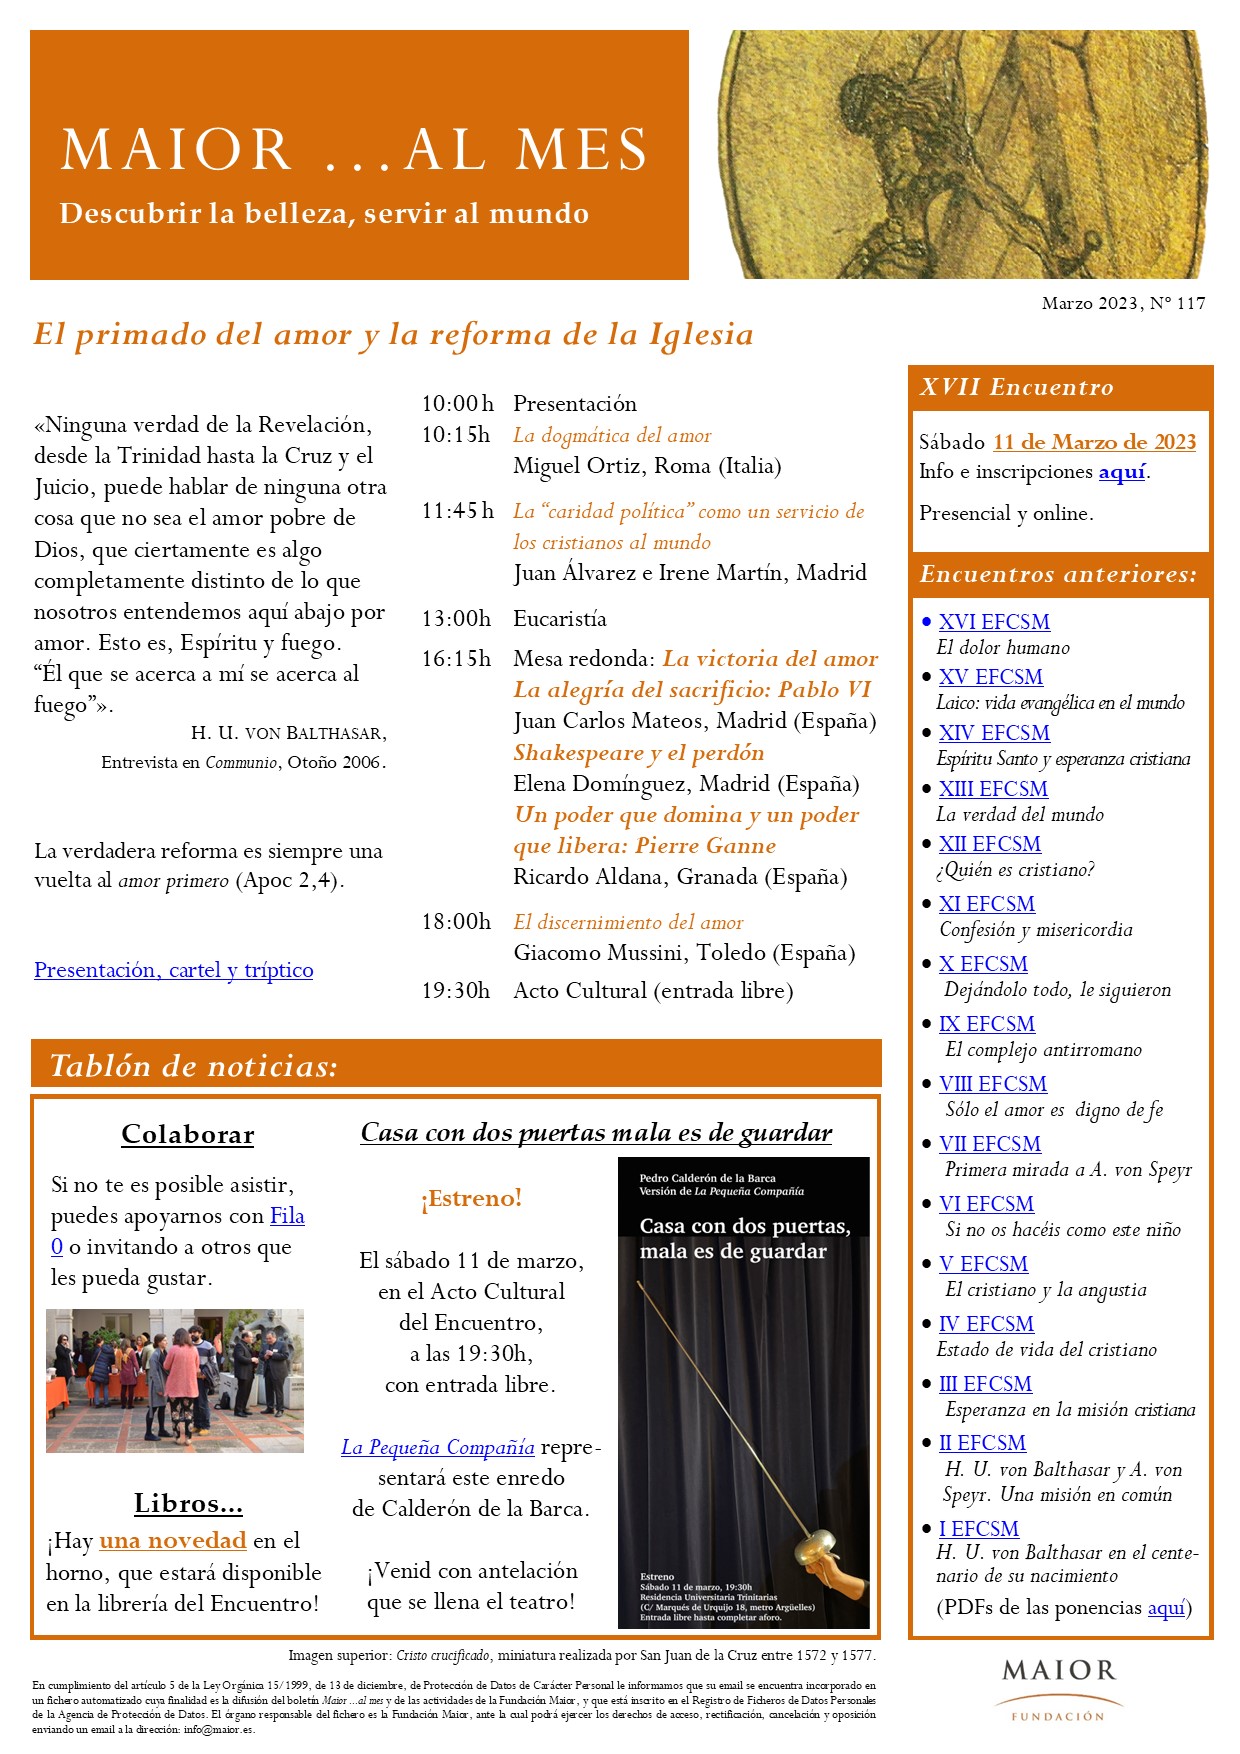 Boletín mensual de noticias y actividades de la Fundación Maior. Edición de marzo 2023